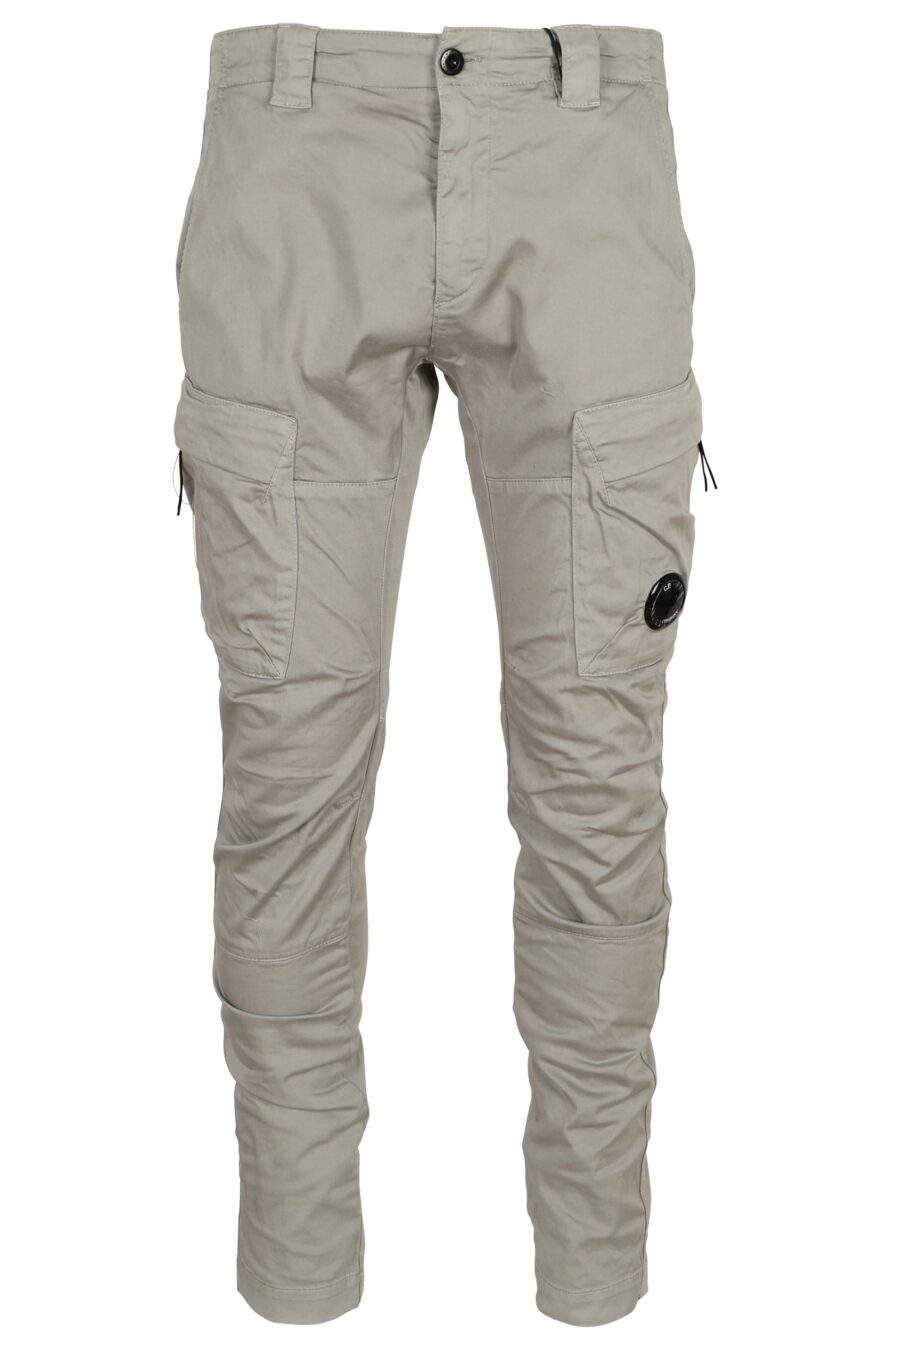 Pantalón gris estilo cargo con logo lente - 7620943722895